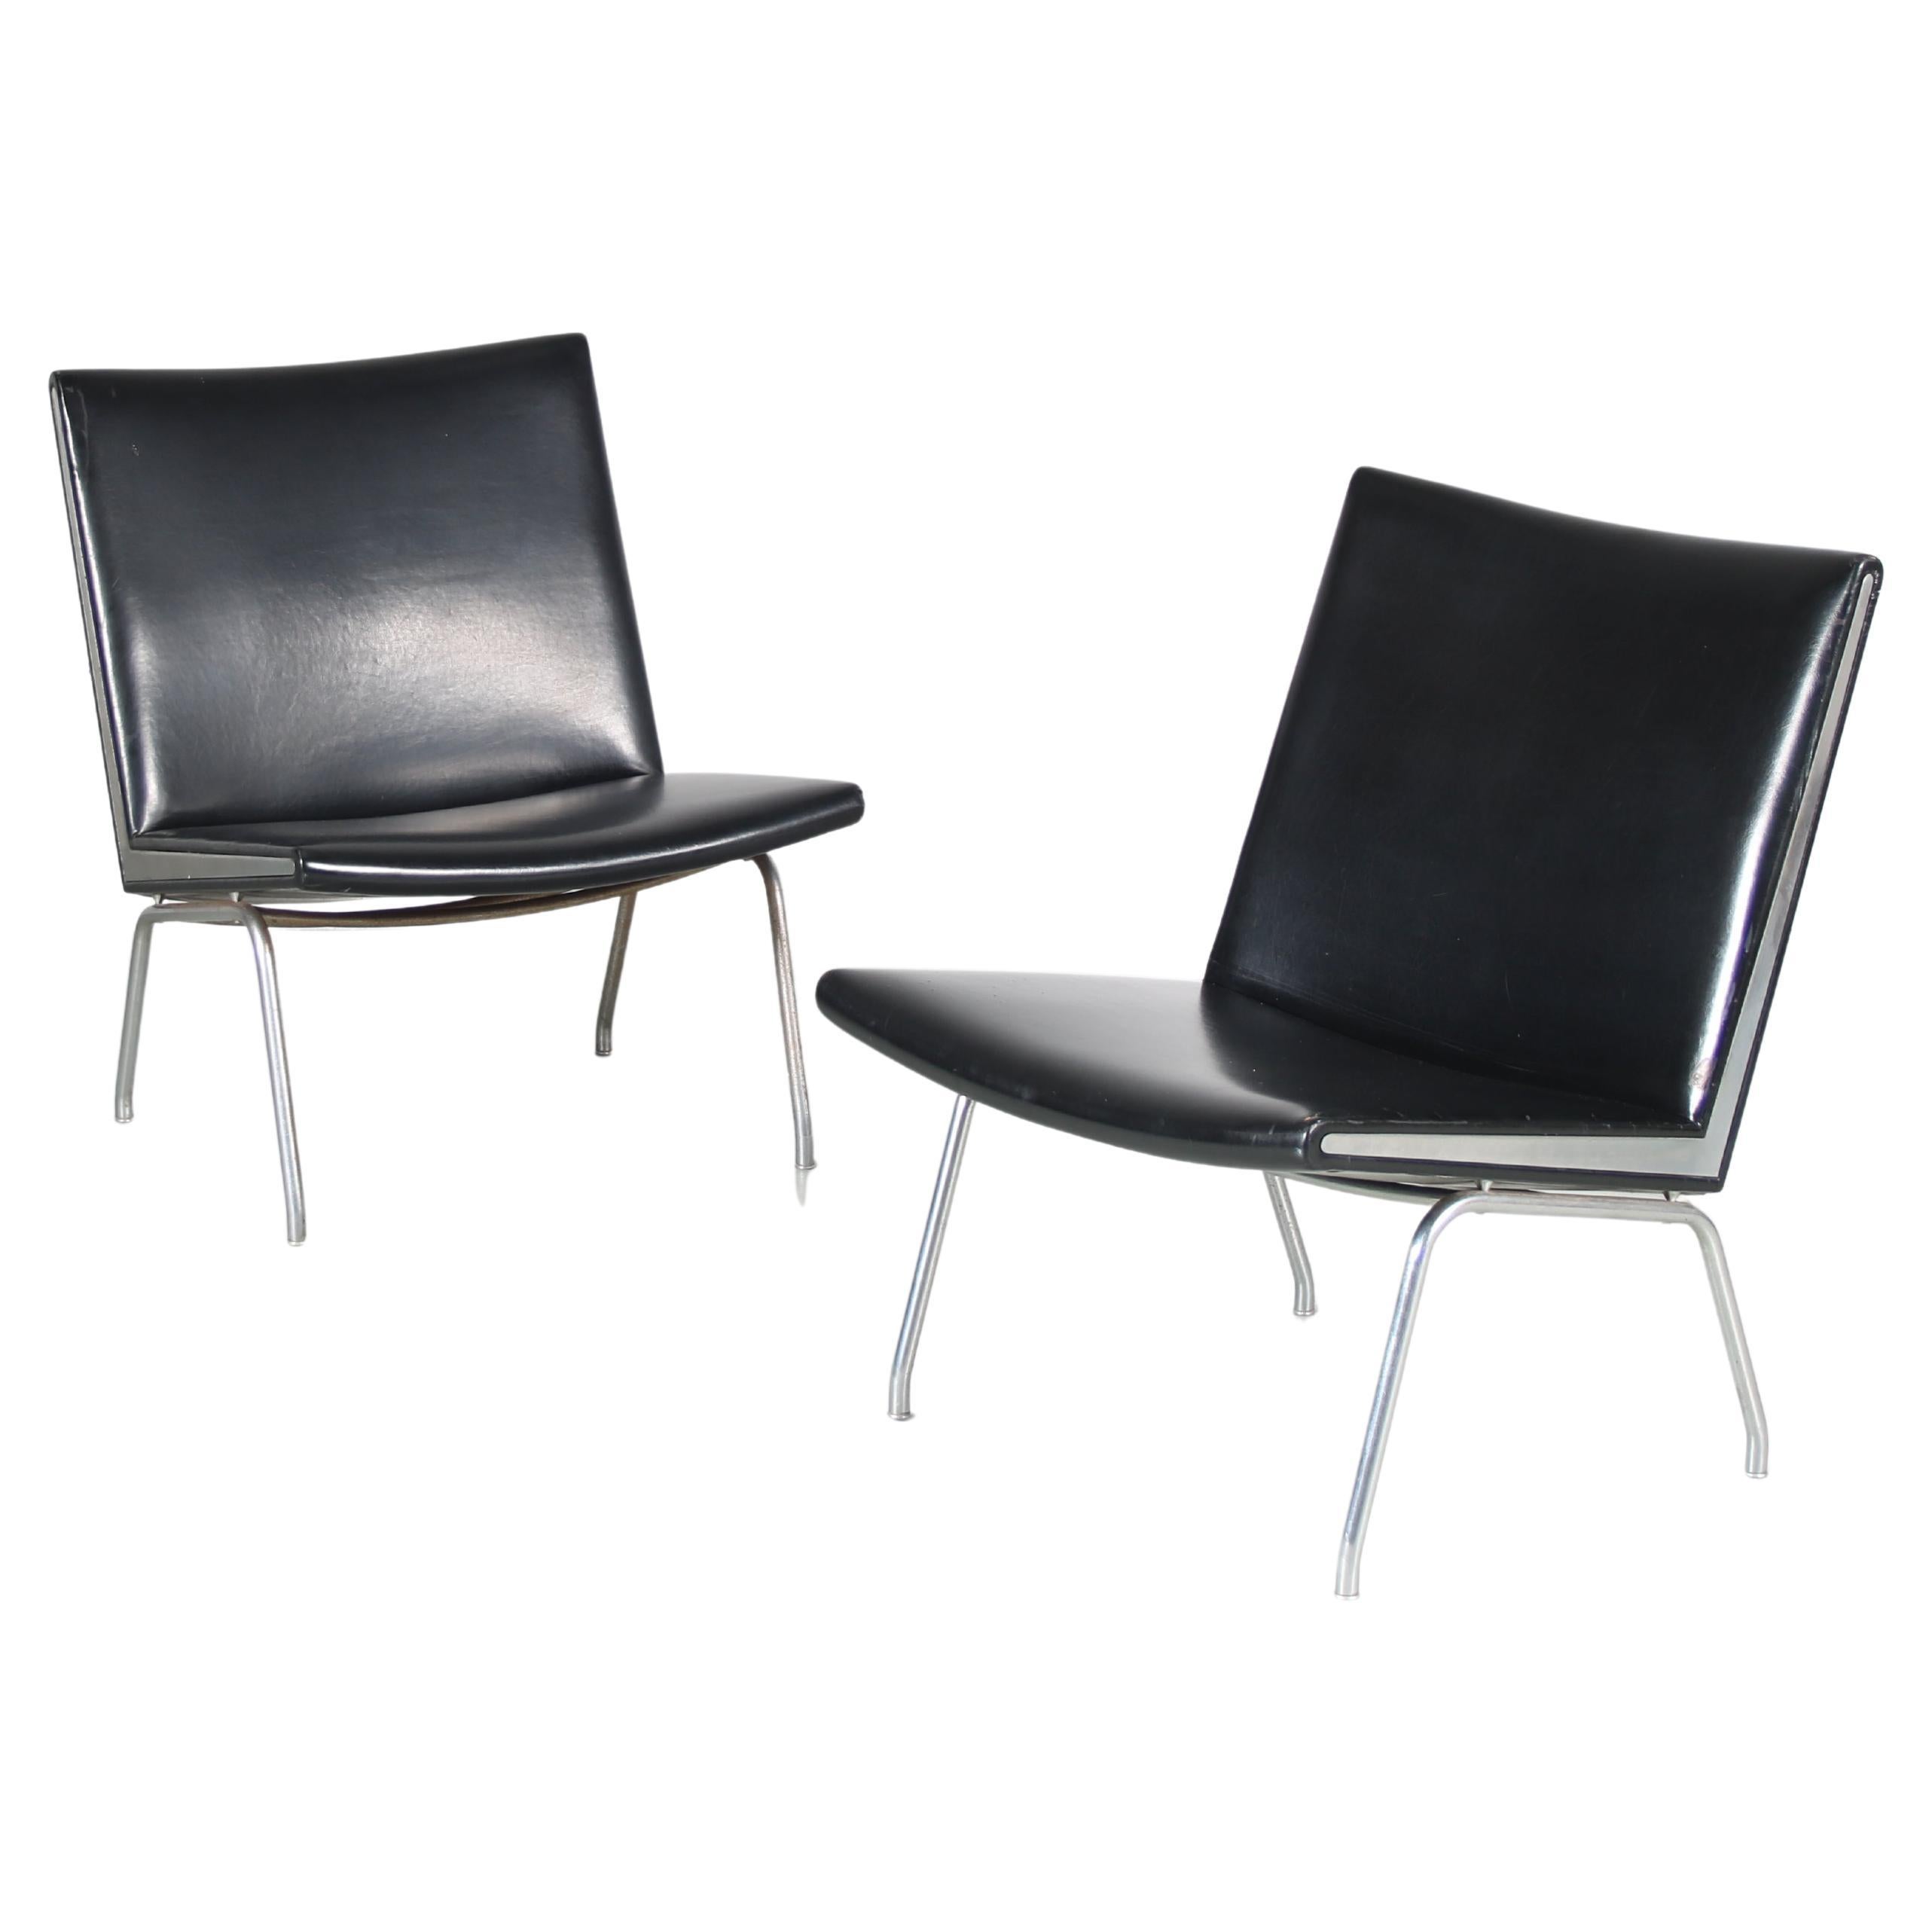 Hans J. Wegner “Airport” Chairs for Ap Stolen, Denmark